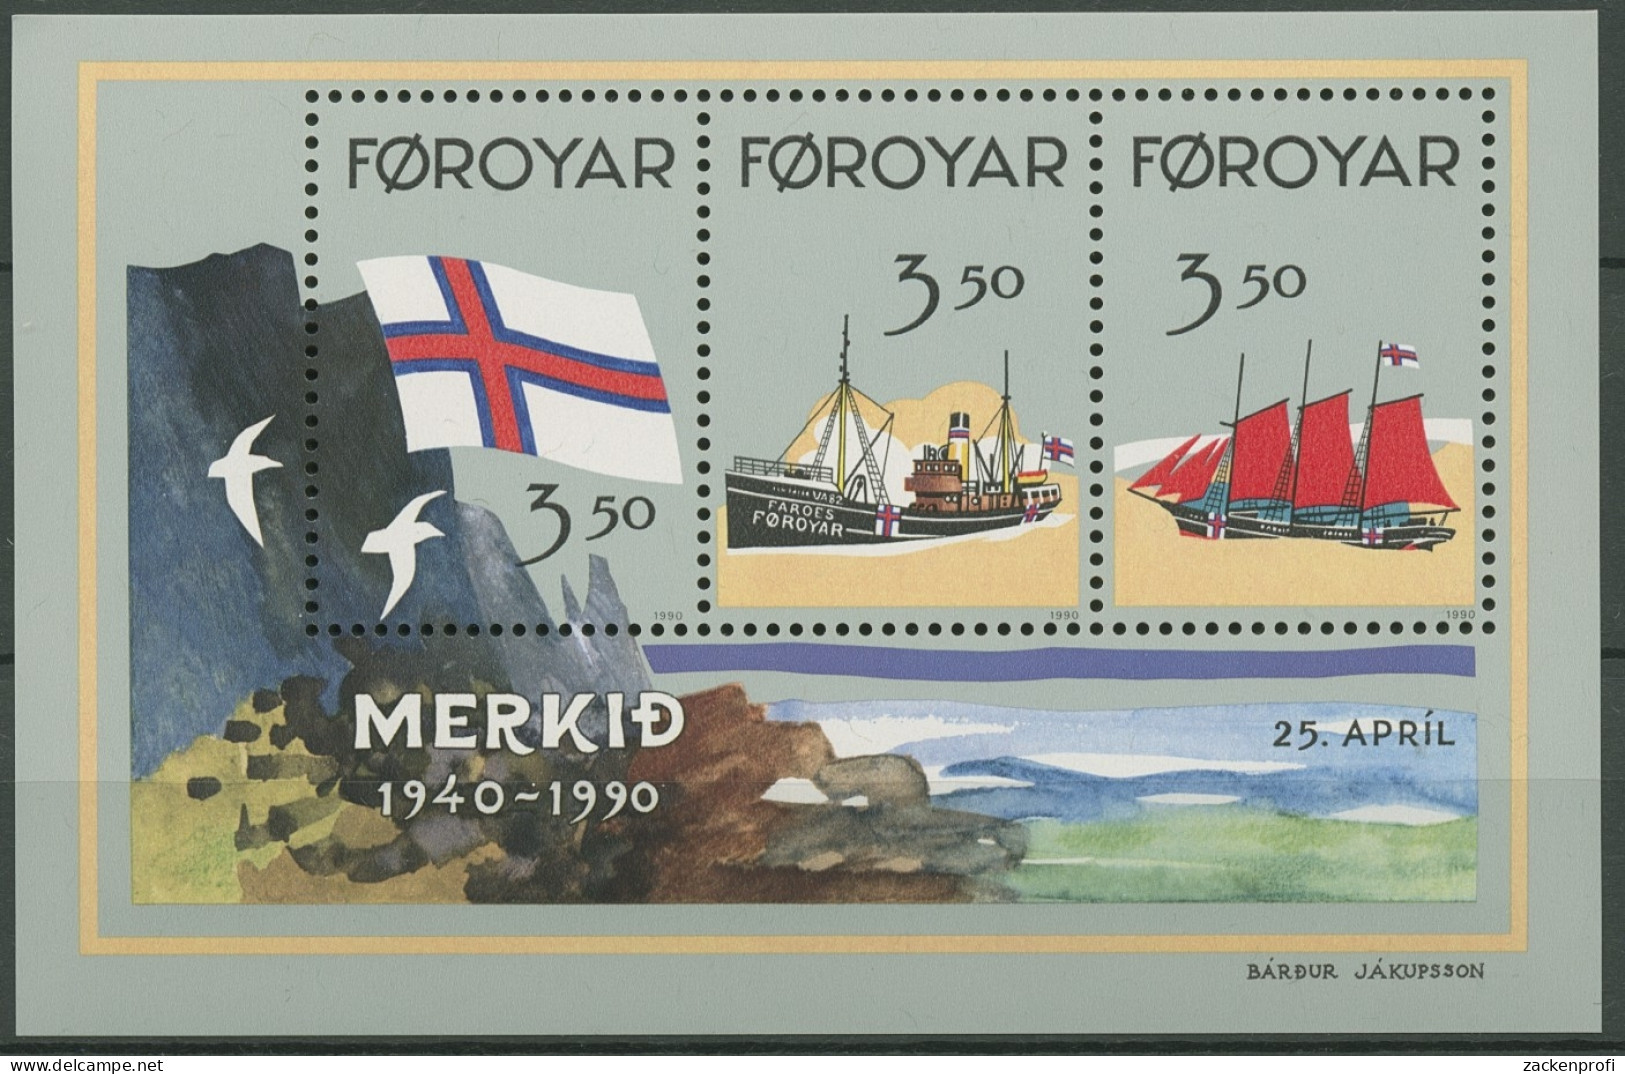 Färöer 1990 50 Jahre Flagge Der Färöer-Inseln Block 4 Postfrisch (C17503) - Faroe Islands